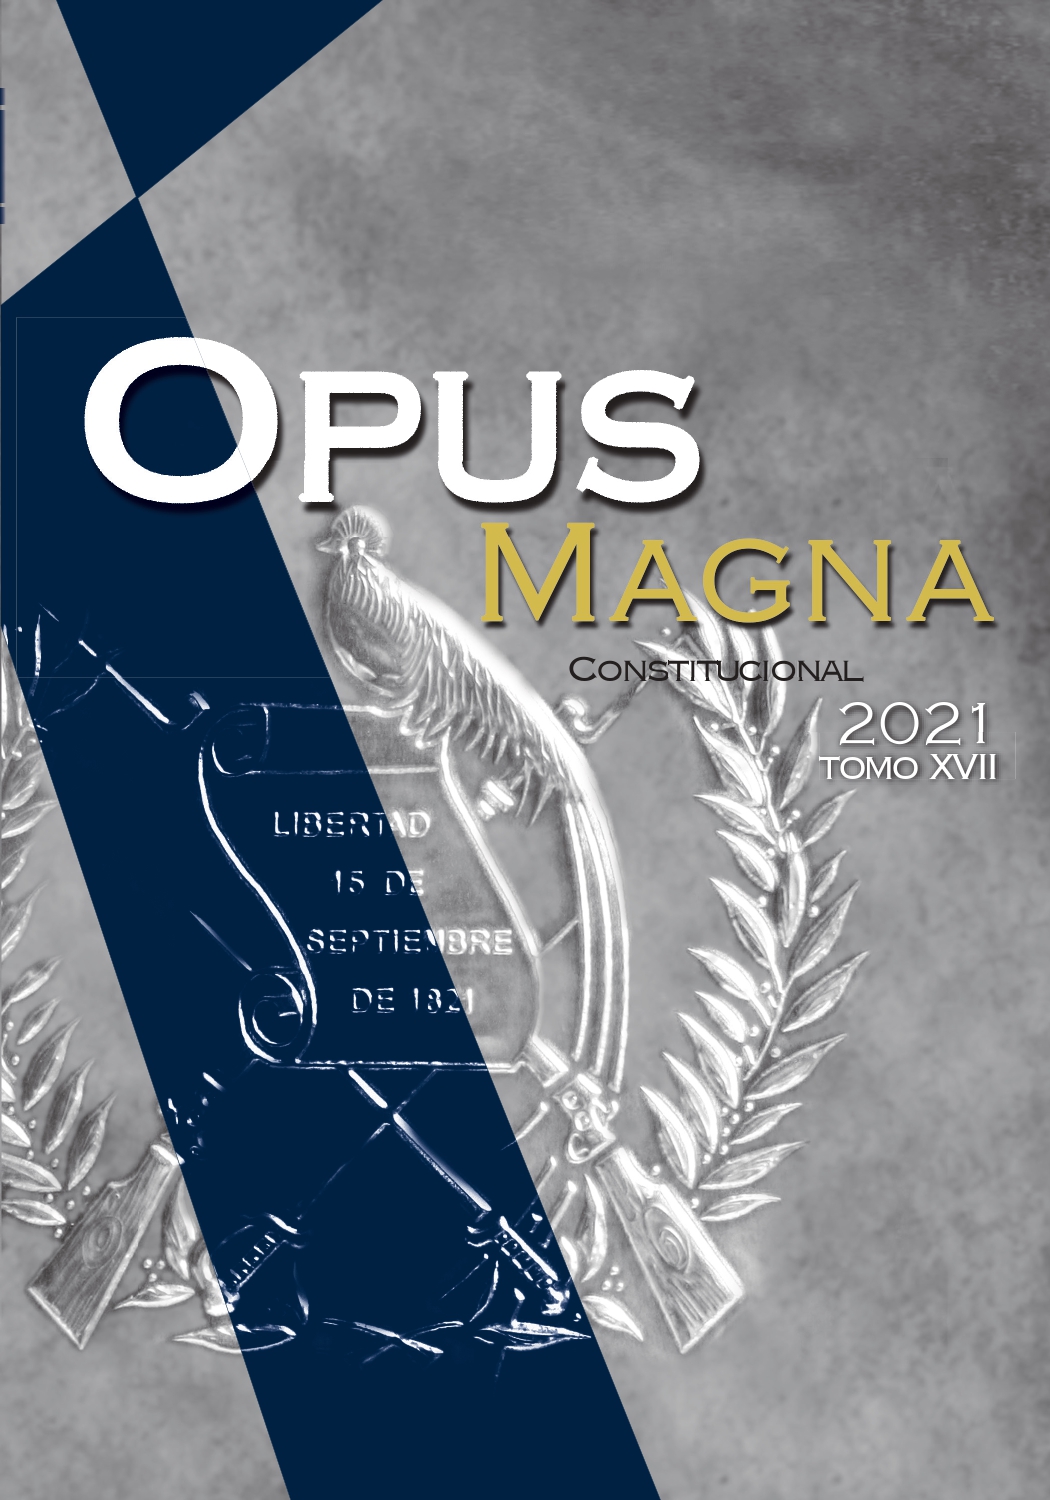 Portada del Opus Magna Constitucional tomo XVII del año 2021